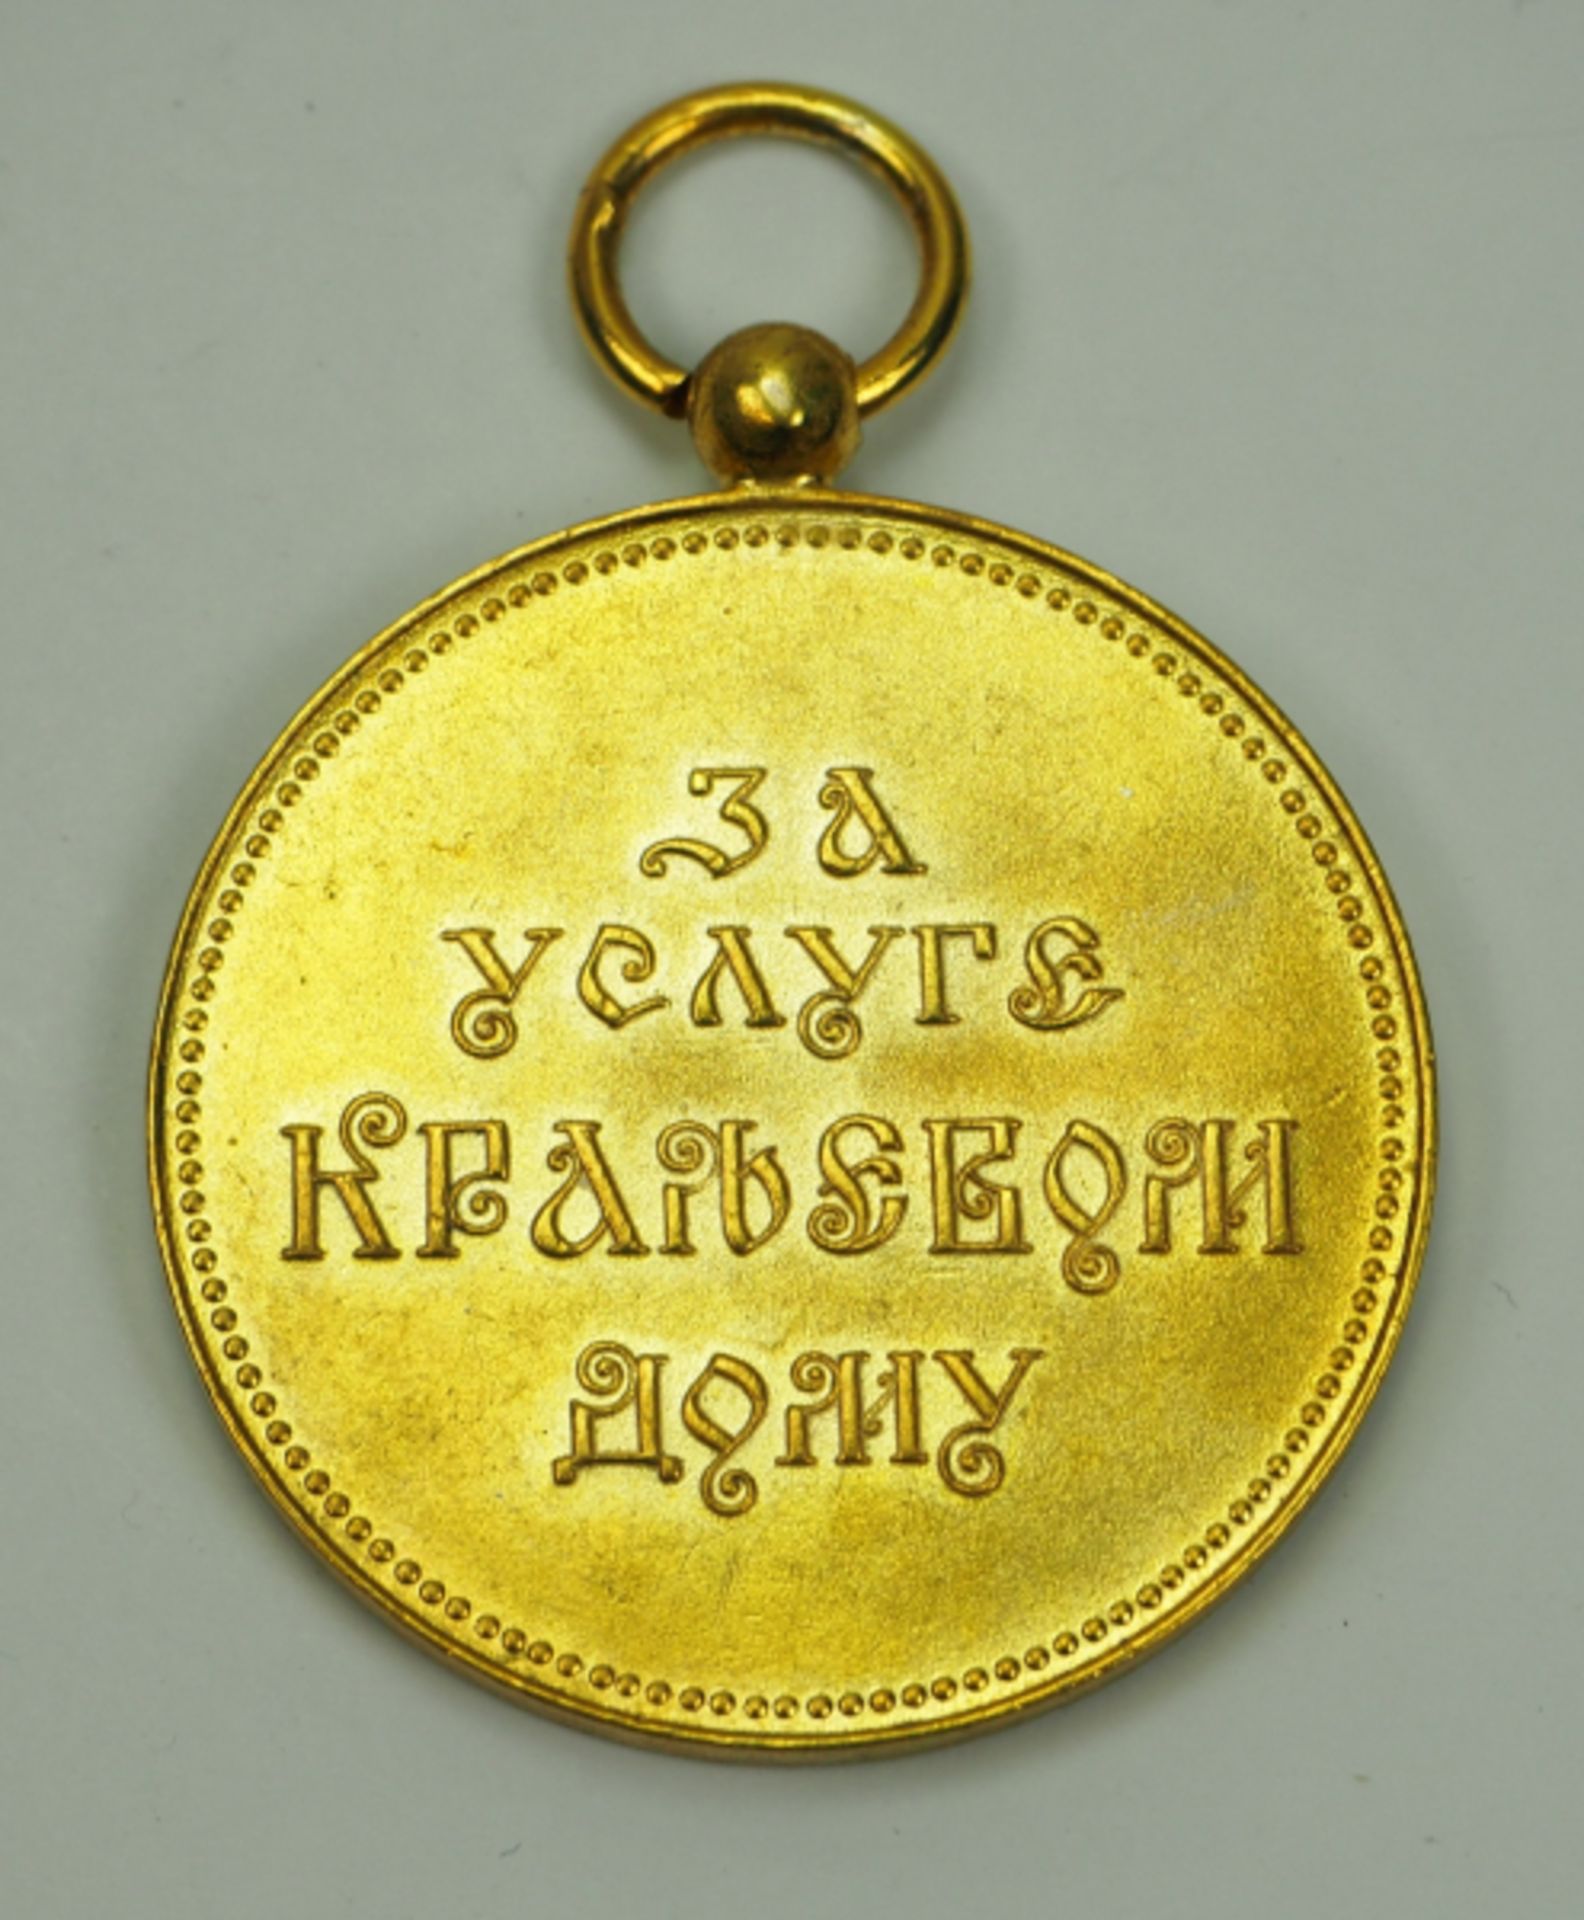 Jugoslawien: Königliche Haushaltsmedaille, 4. Typ (1921-1927 / 1934-41), in Gold.Vergoldet. - Bild 3 aus 3